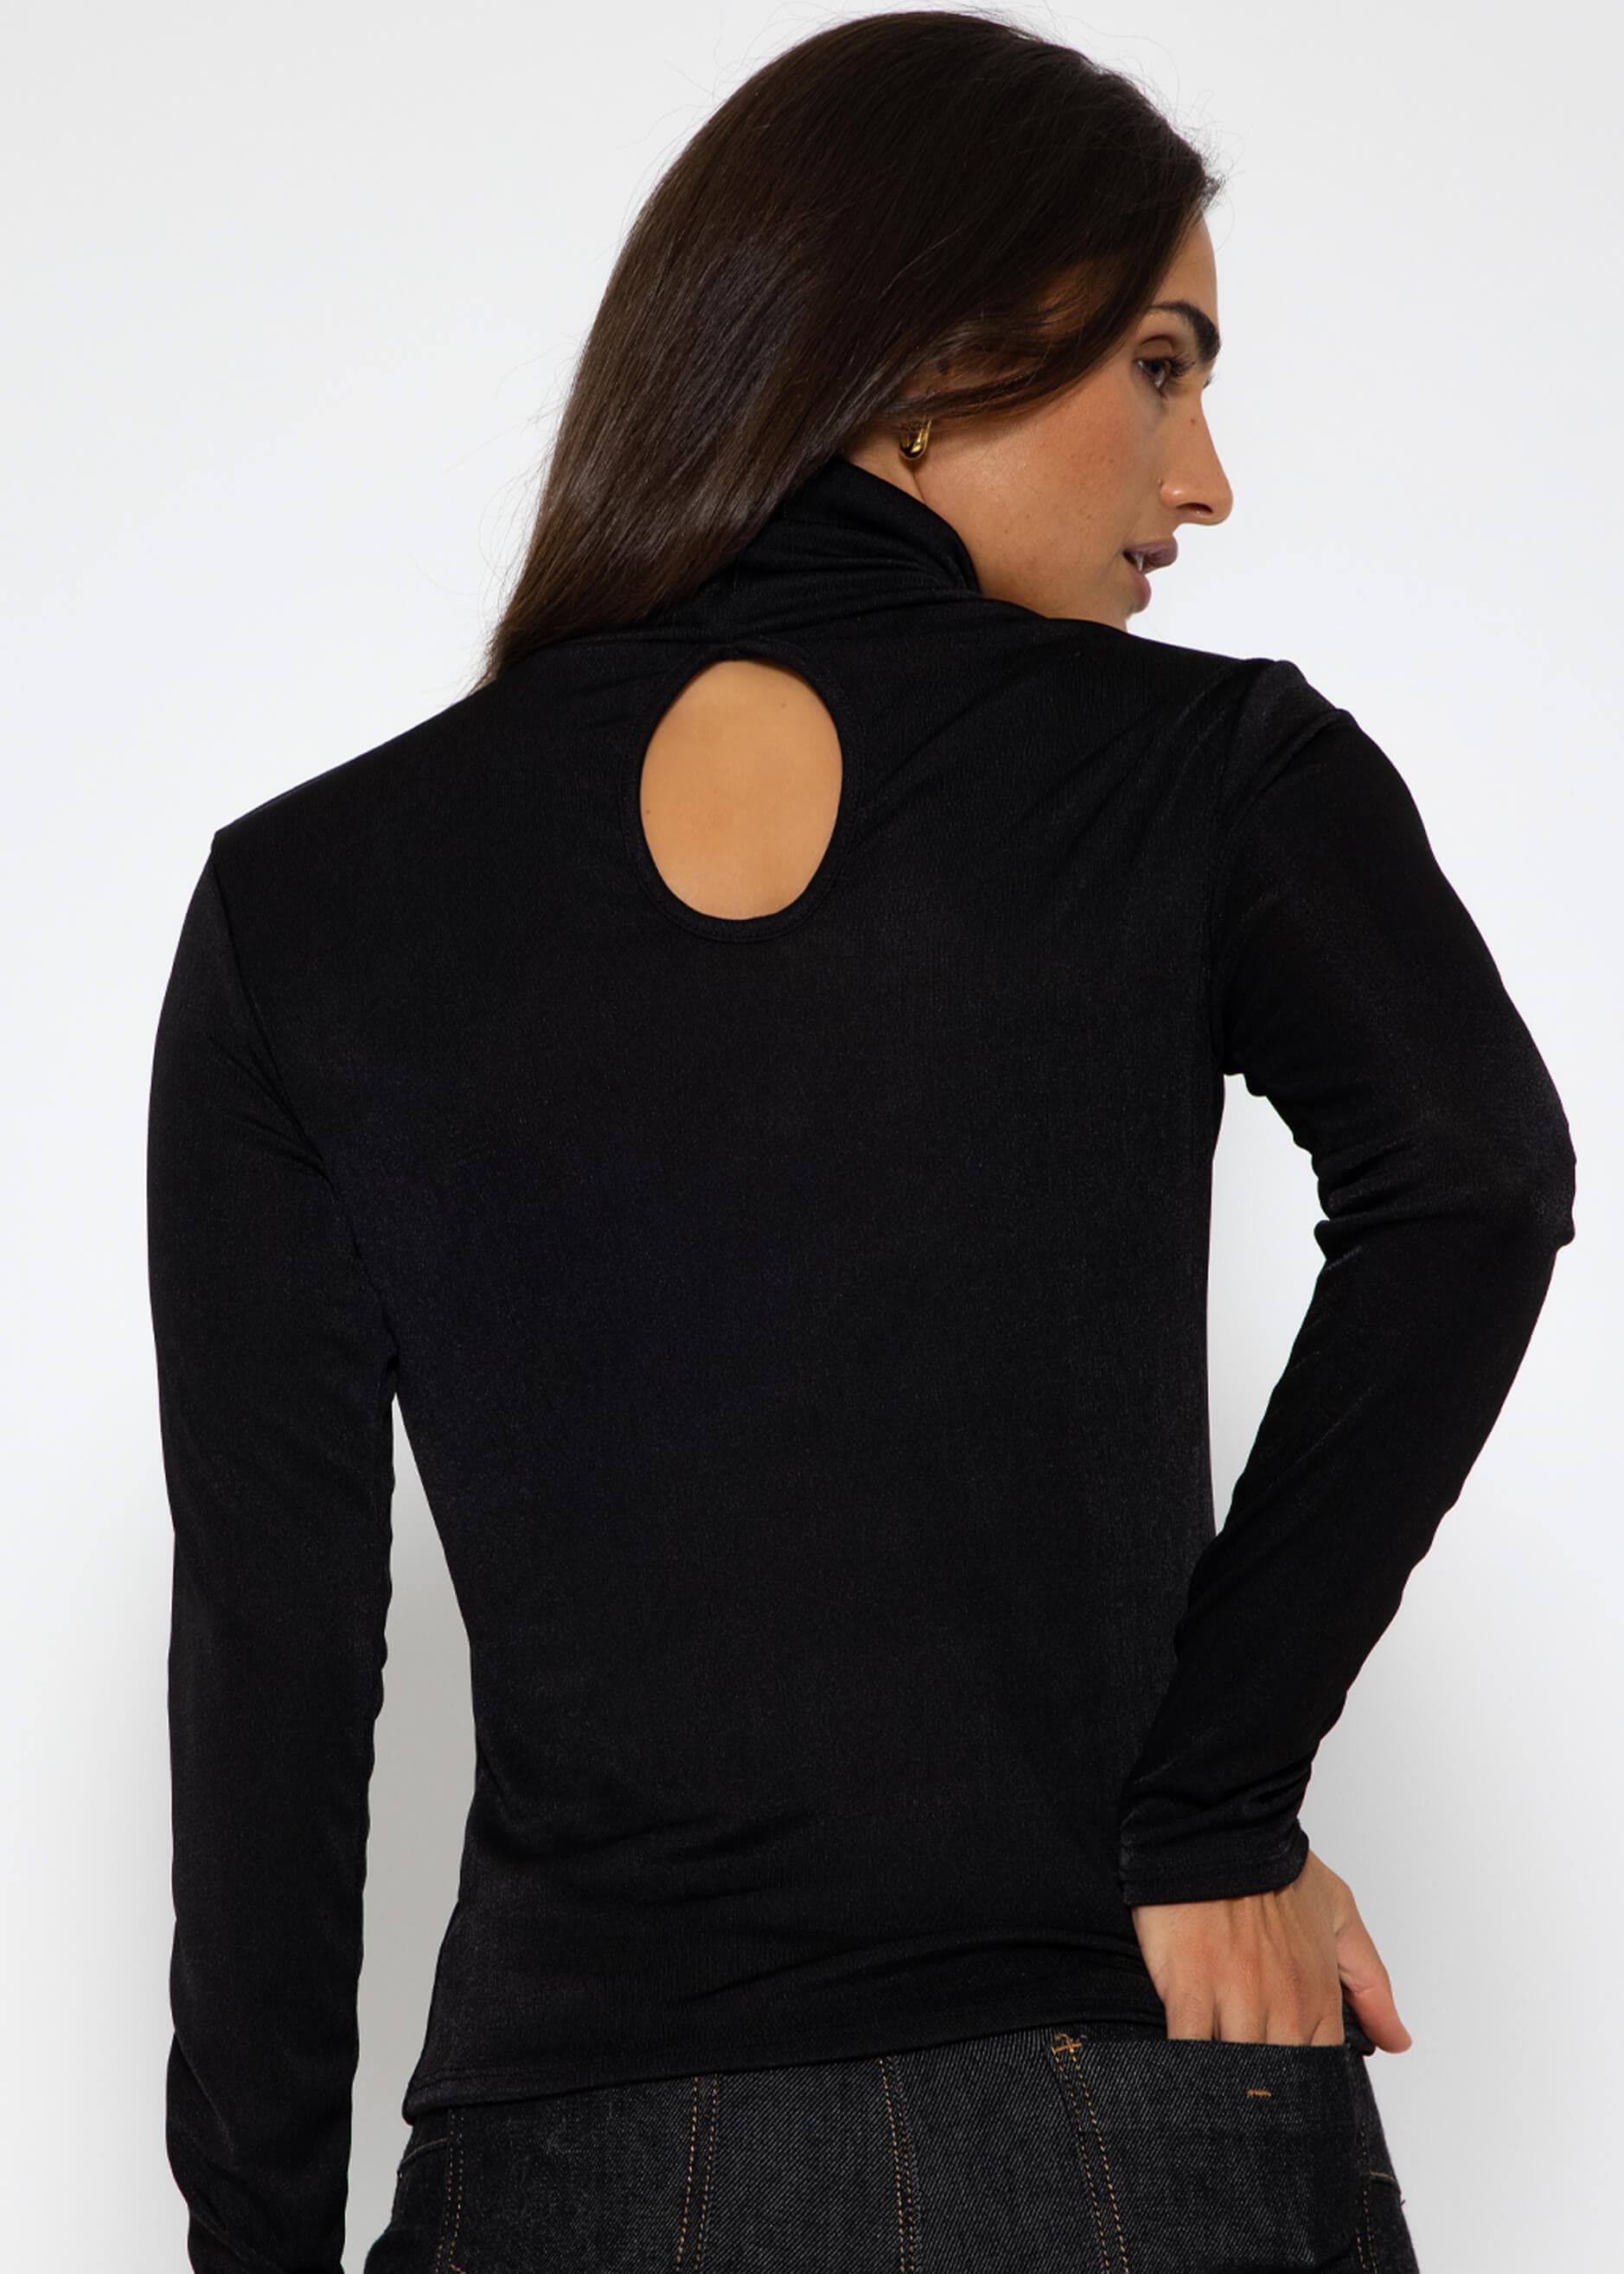 Fließendes Langarmshirt mit Rollkragen und Rückenausschnitt - schwarz |  Langarm | Bekleidung | SALE % | SASSYCLASSY